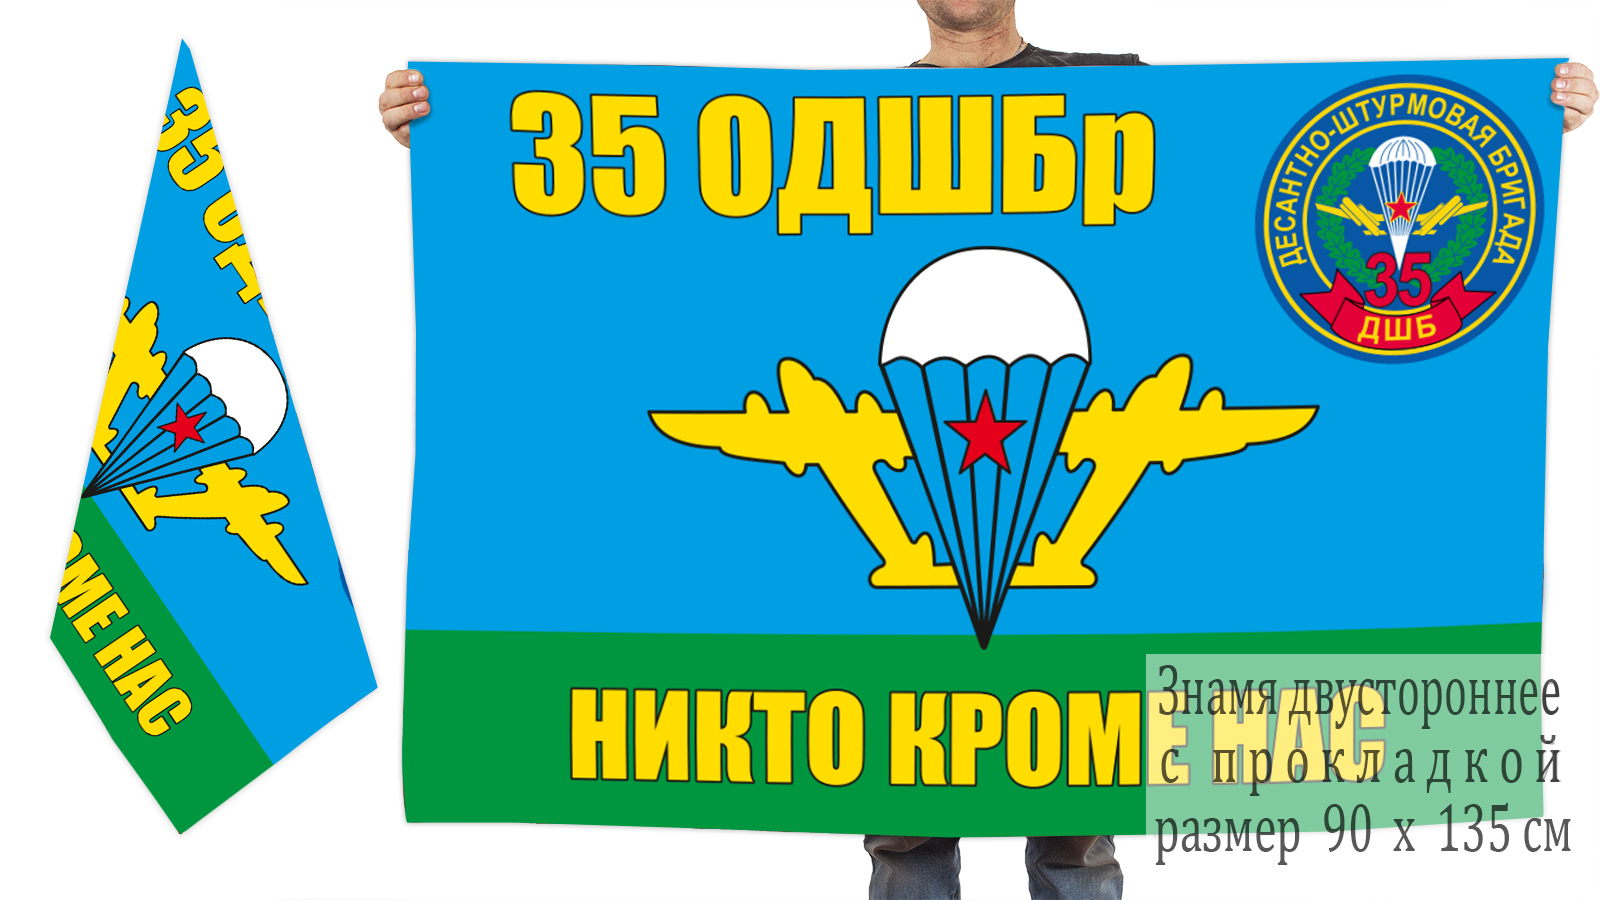 Двусторонний флаг 35-я ОДШБр купить в розницу или оптом